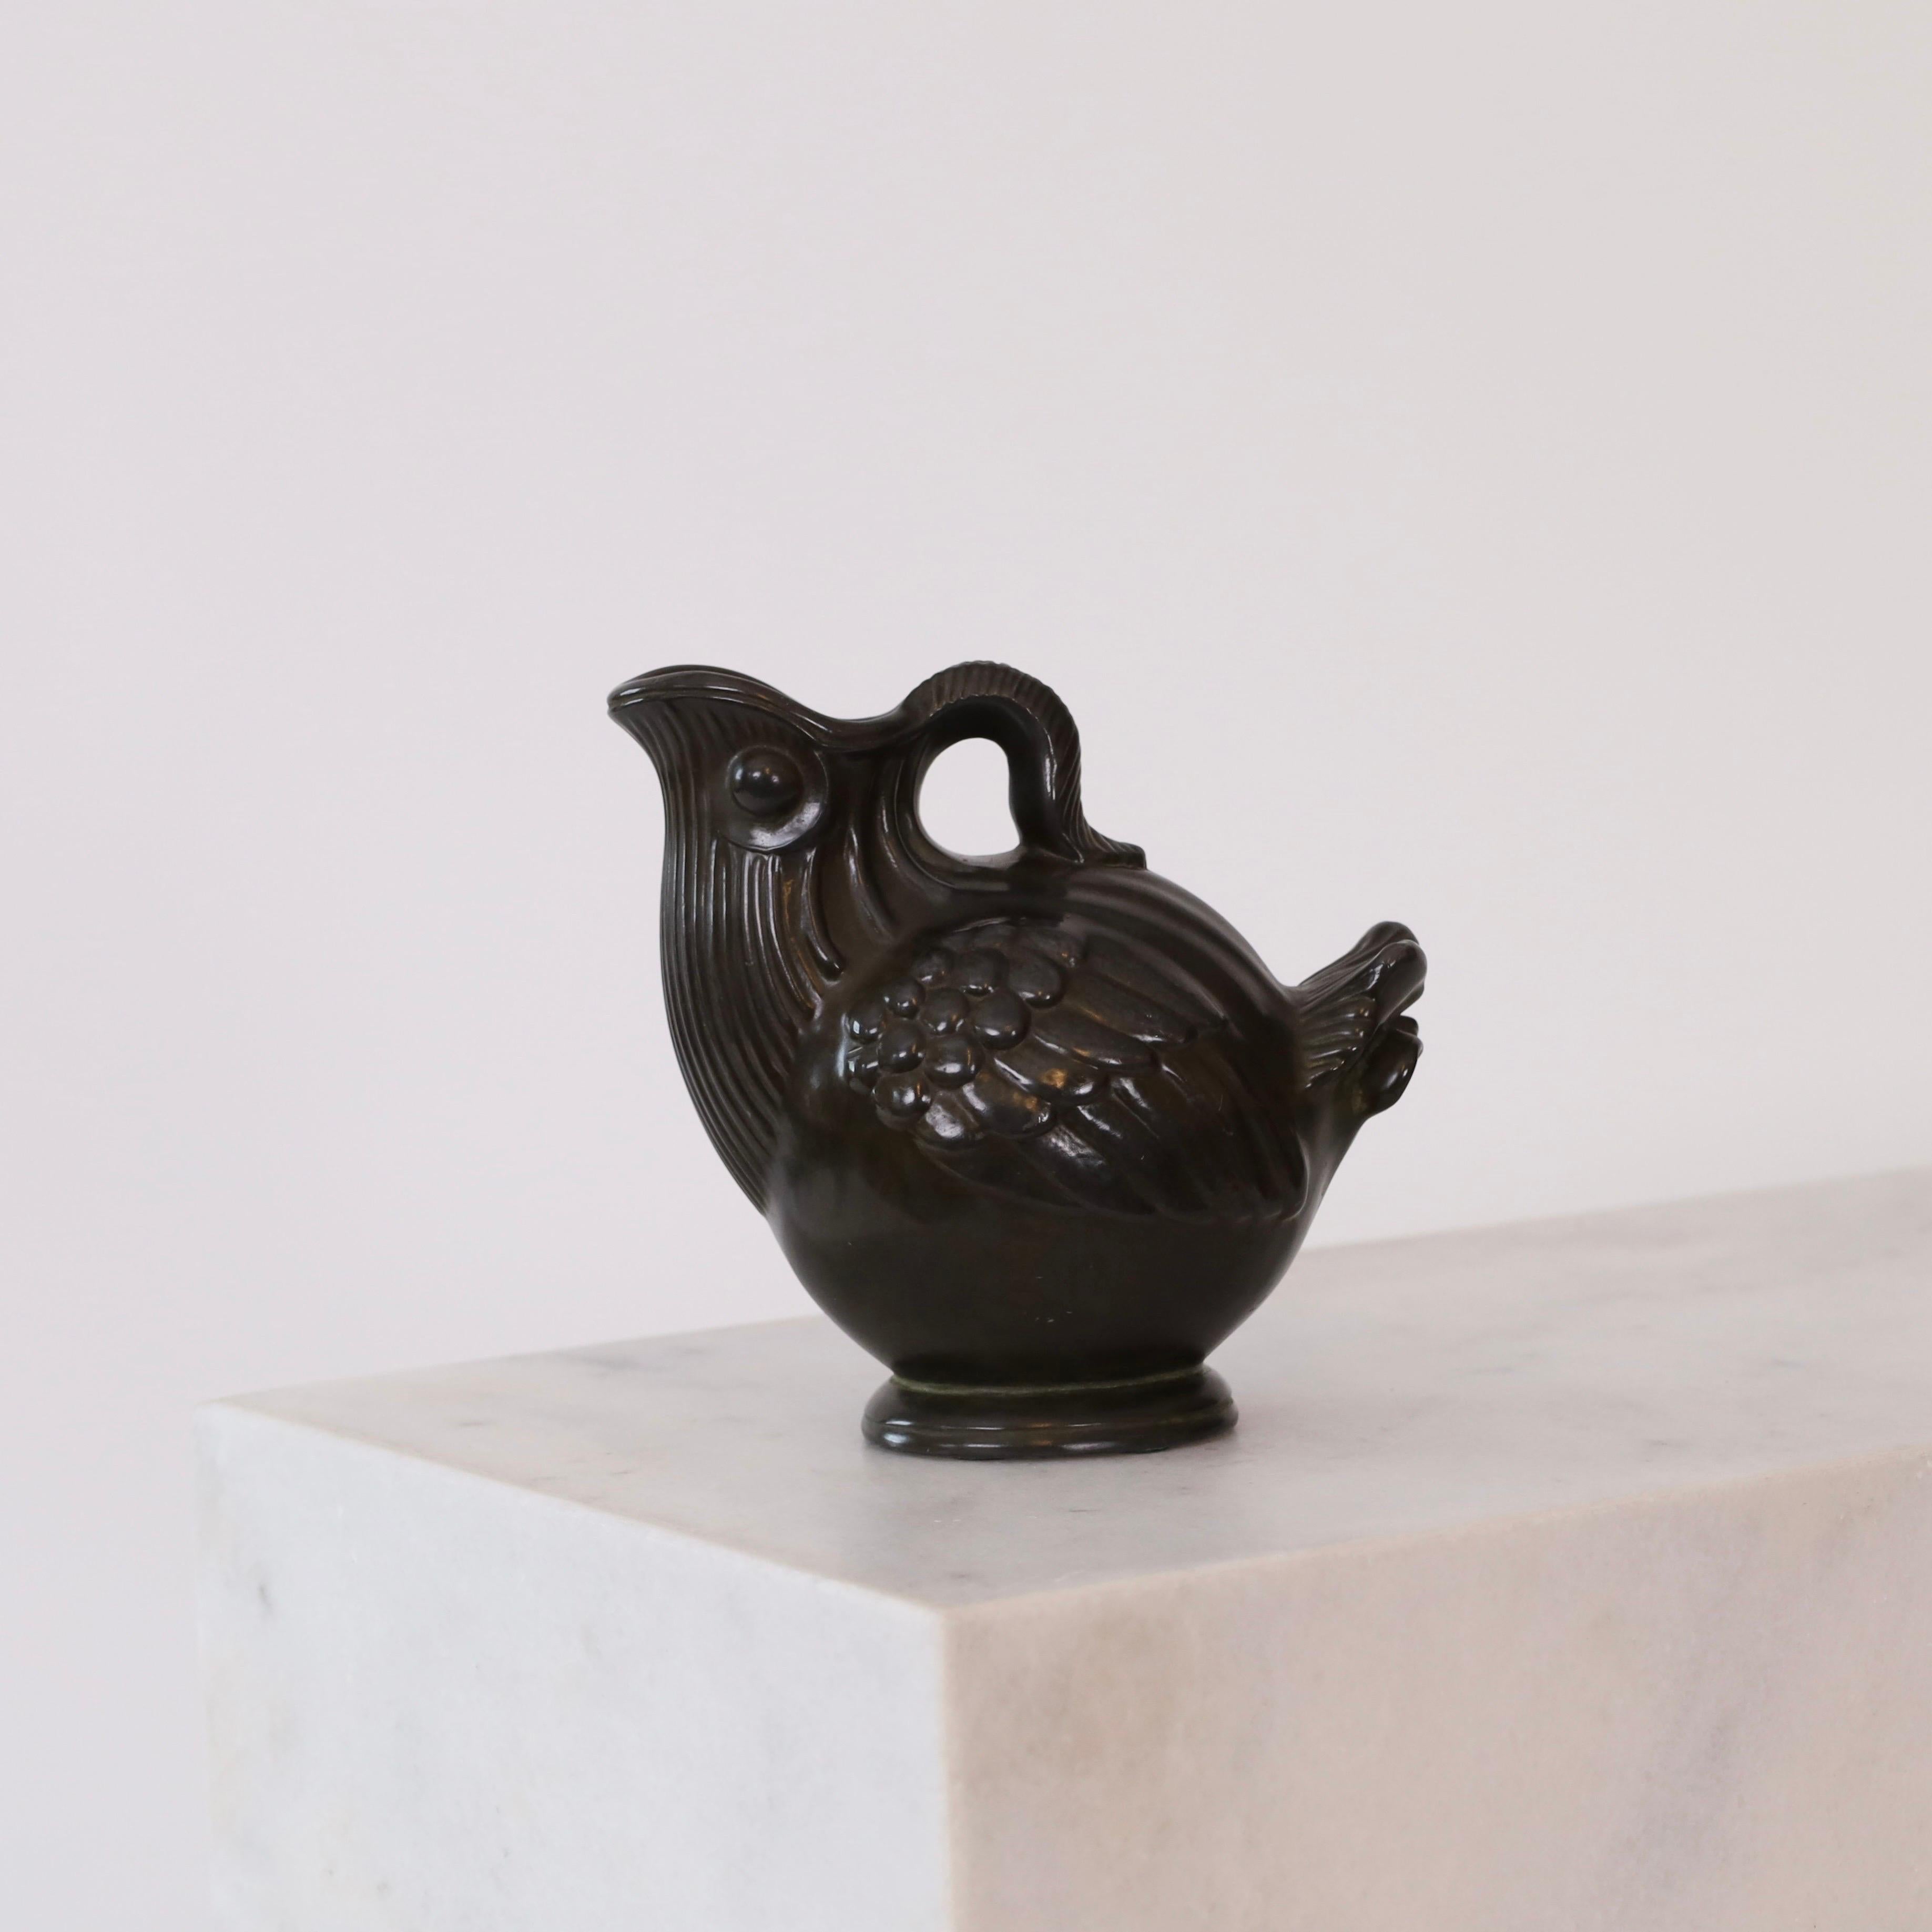 Un vase en métal en forme d'oiseau conçu par Just Andersen dans les années 1930. Une pièce qui attire l'attention et qui est en très bon état.

* Un vase en métal en forme d'oiseau
* Designer : Just Andersen
* Modèle : 1898
* Année : années 1930
*